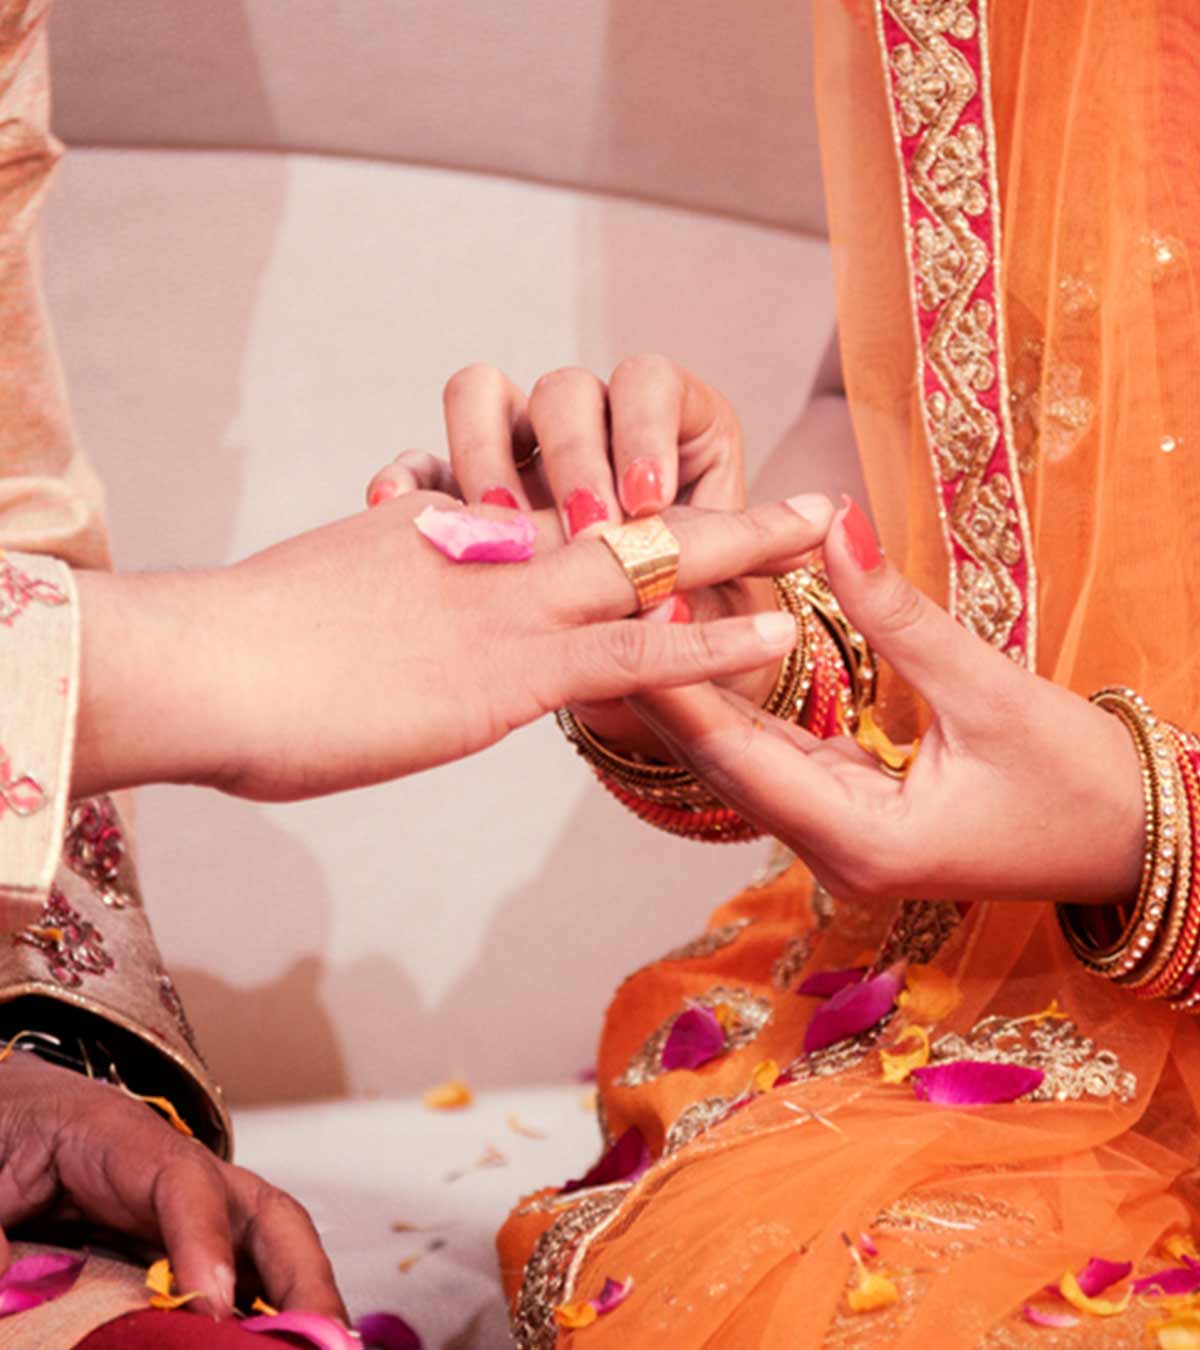 50+ सगाई की शुभकामनाएं व बधाई संदेश | Engagement Wishes And Shayari In Hindi